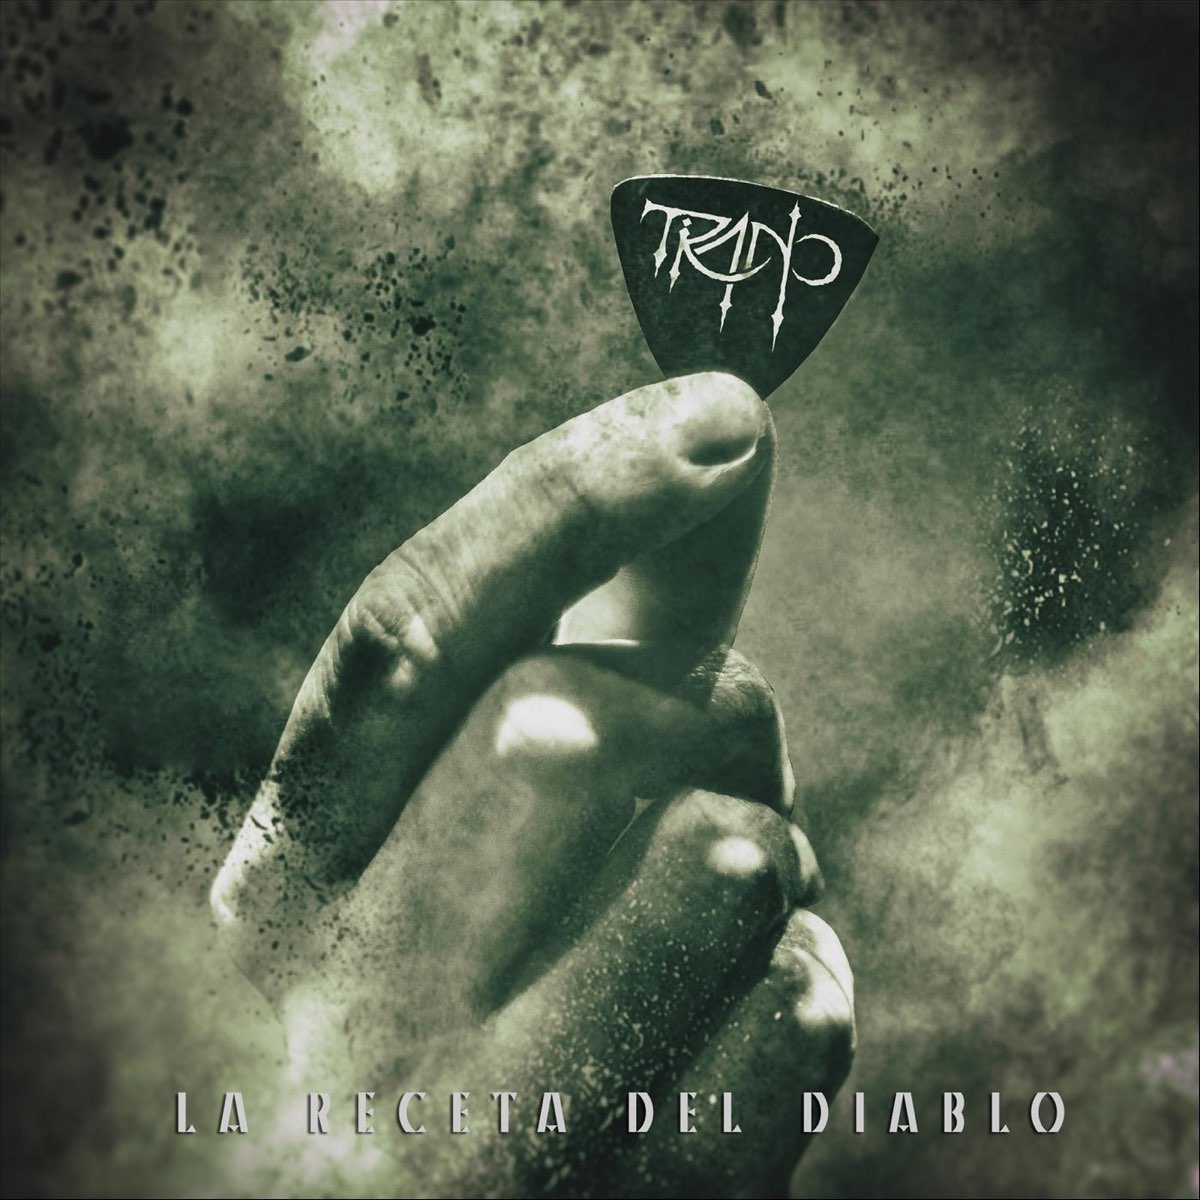 La Receta del Diablo - EP de Tirano en Apple Music